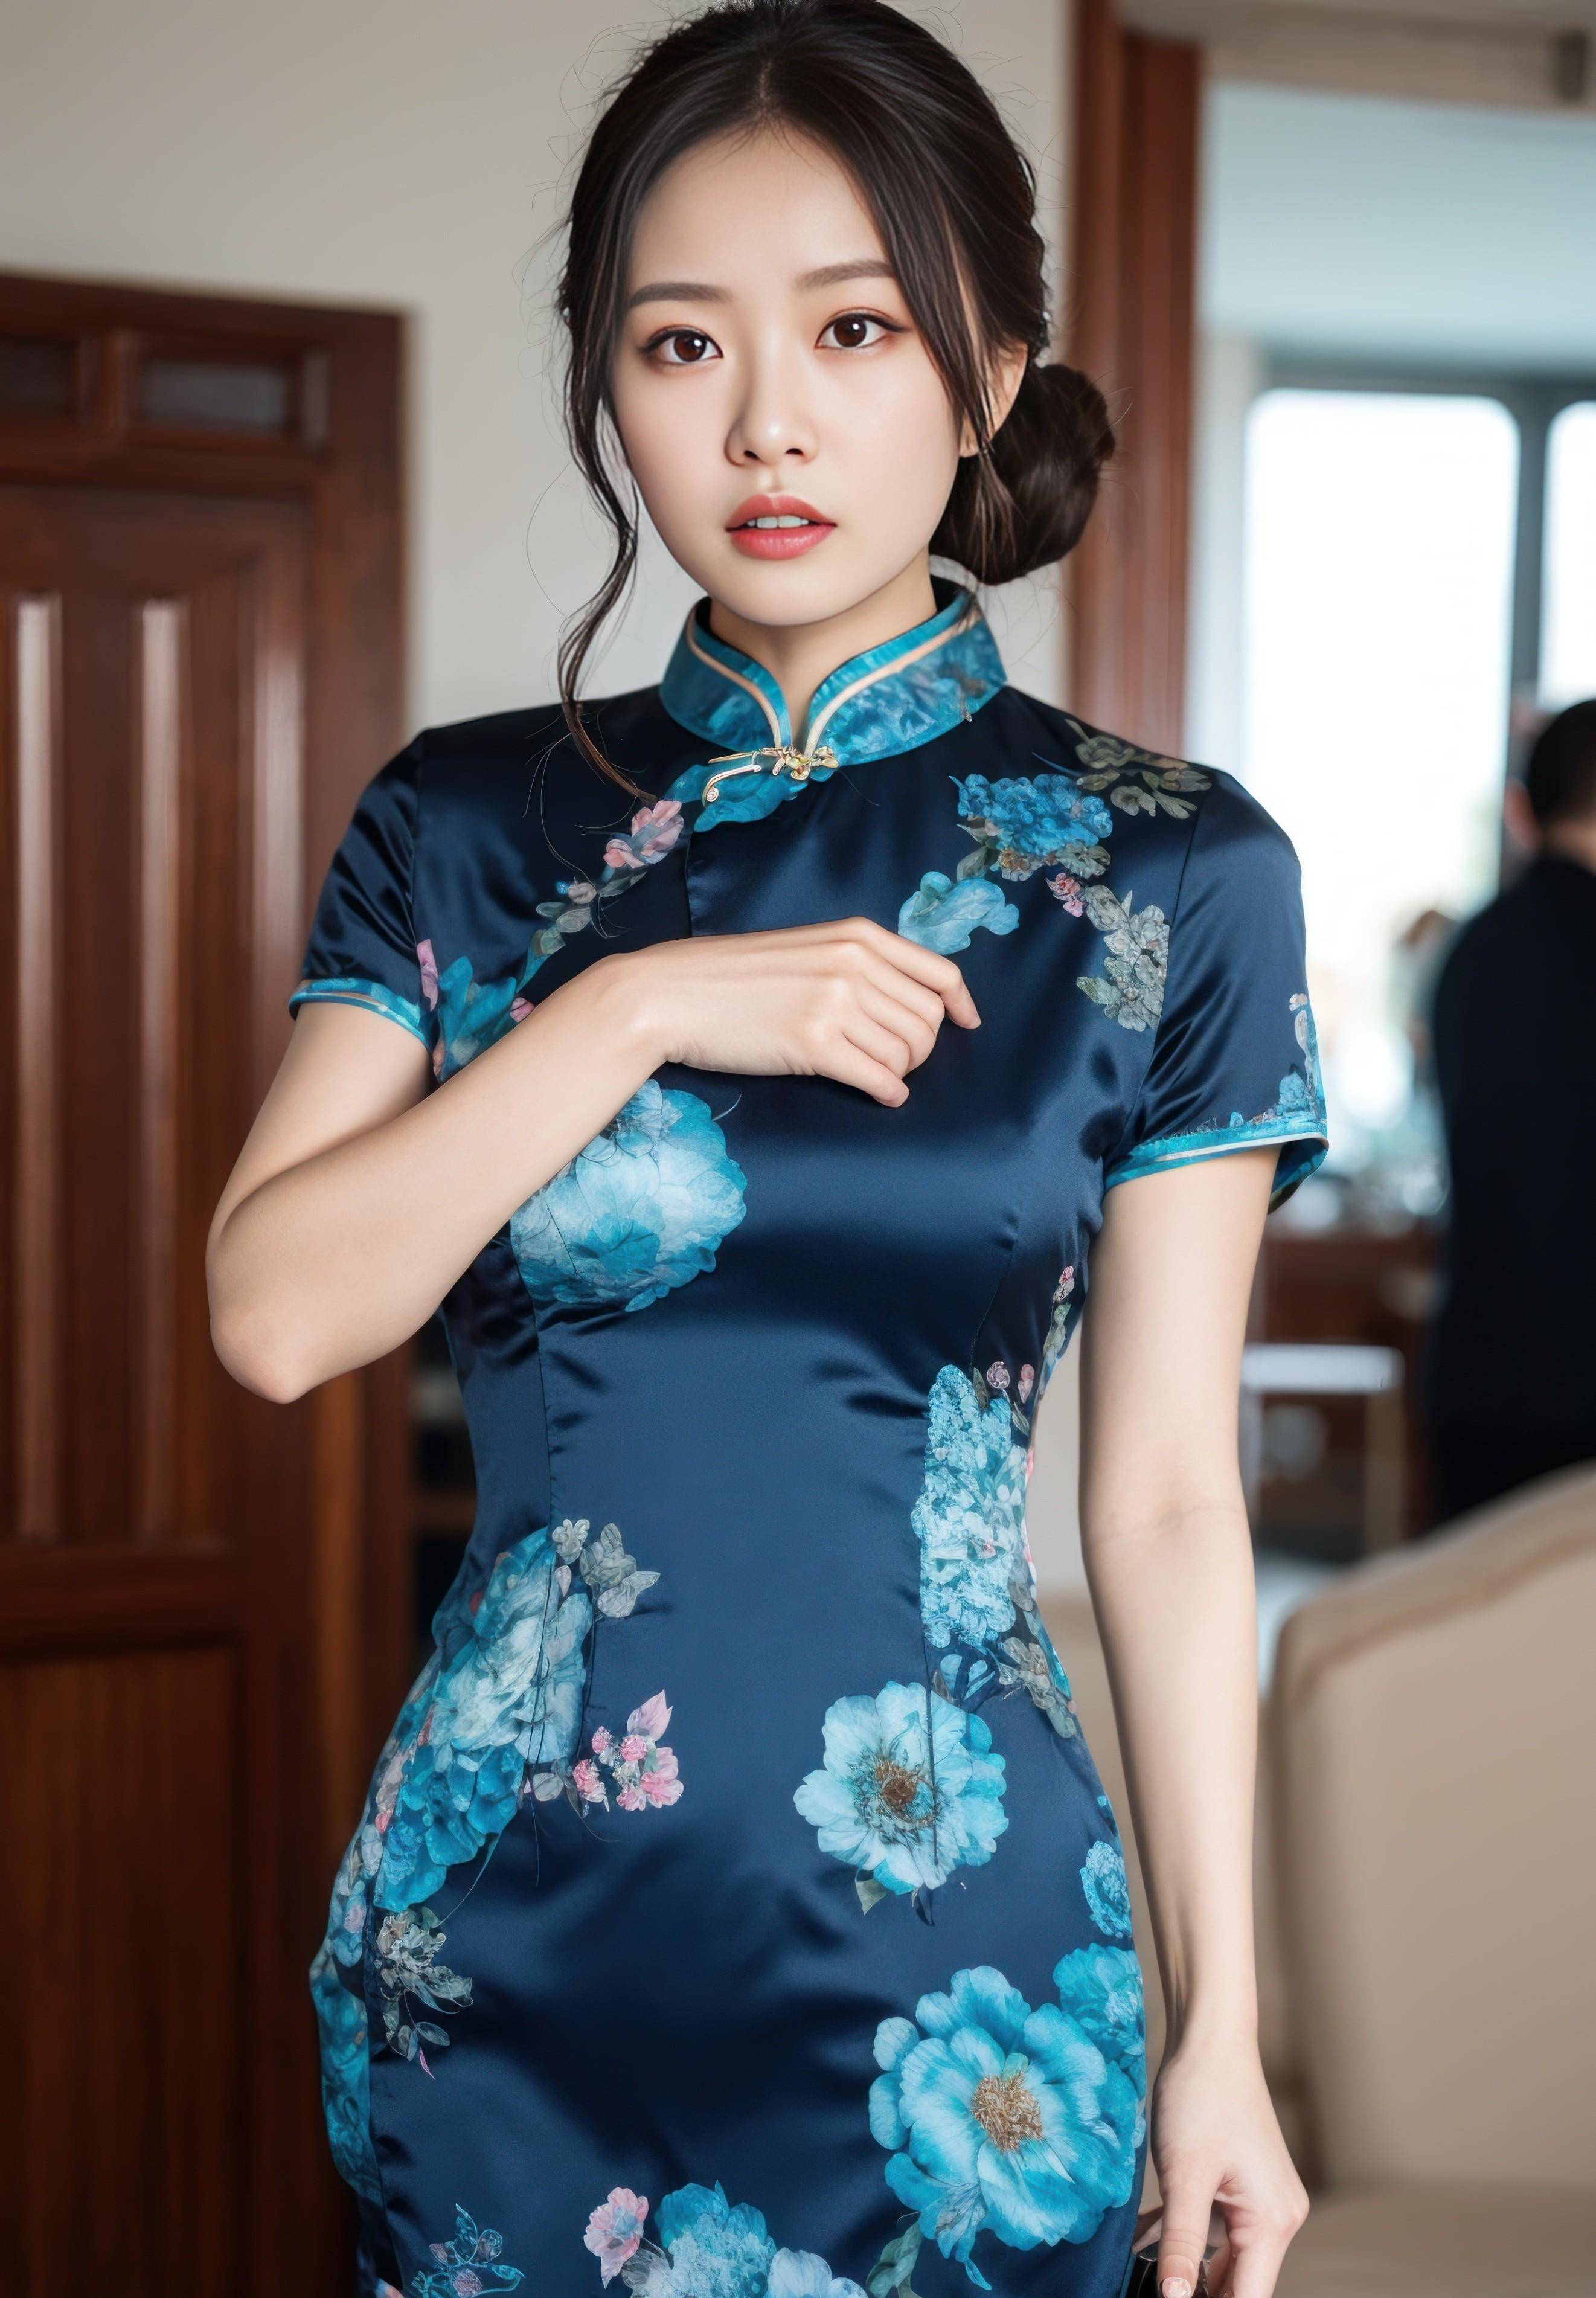 图集旗袍美女中国风美颜滤镜赏析:给你一种别样的精致之美